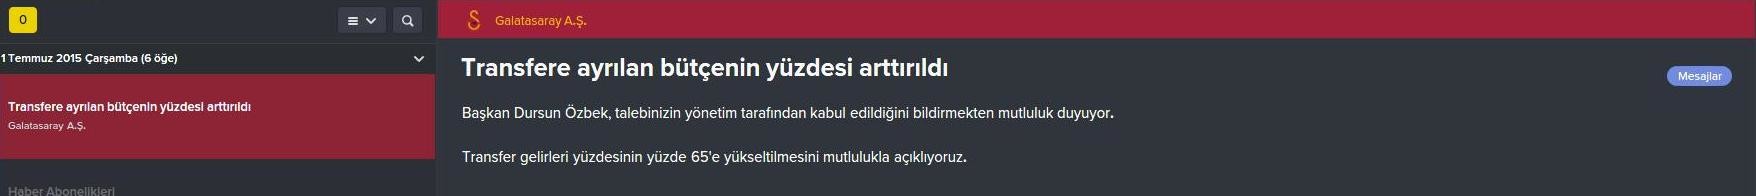  FM 2016 Galatasaray Kariyeri  -Yine yeniden- (3. sezon basladi)